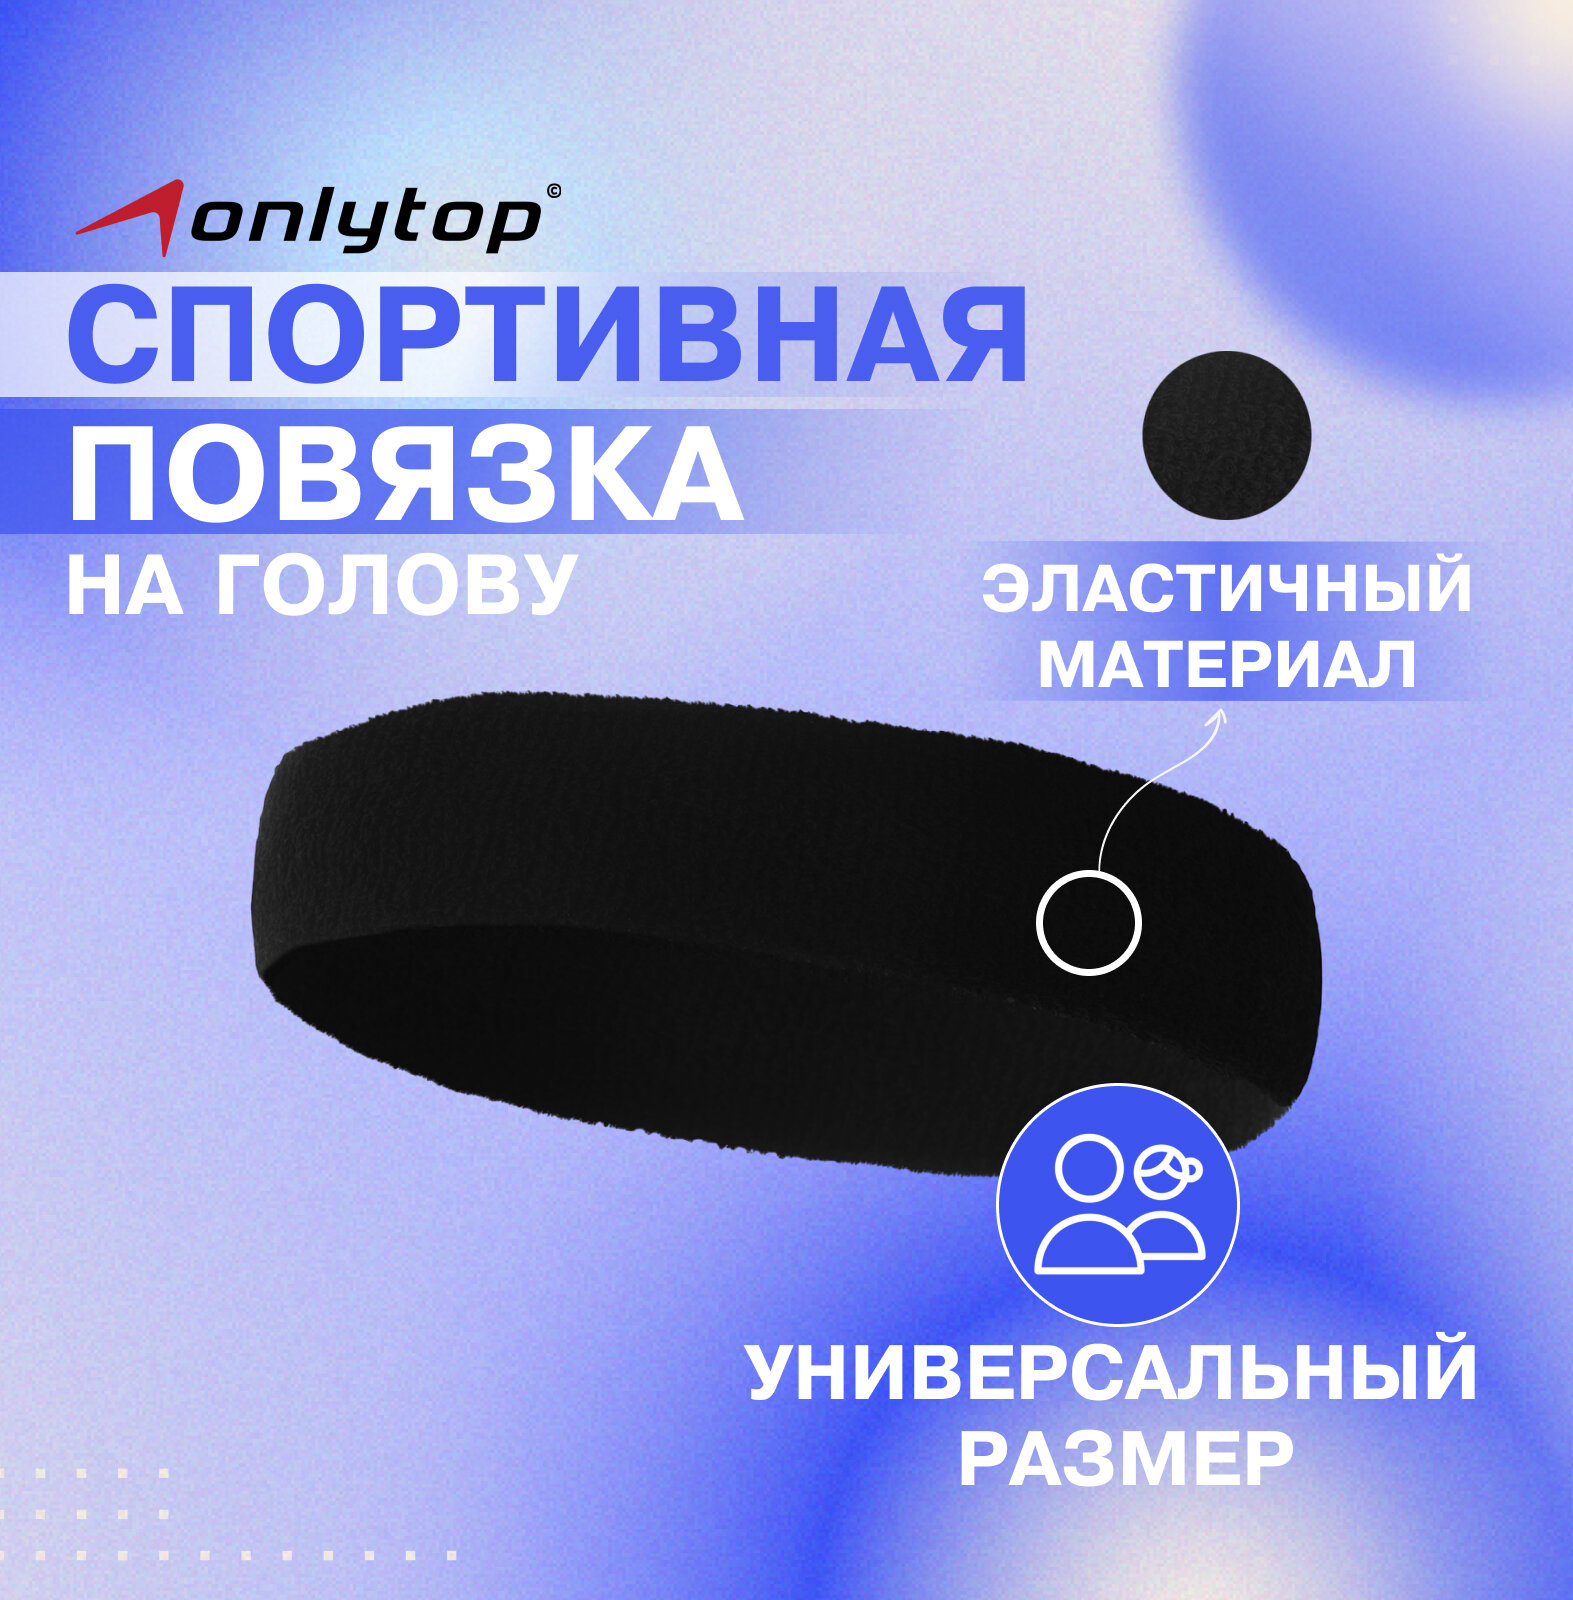 Спортивная повязка на голову, размер 17 х 5,5 см, цвет чёрный